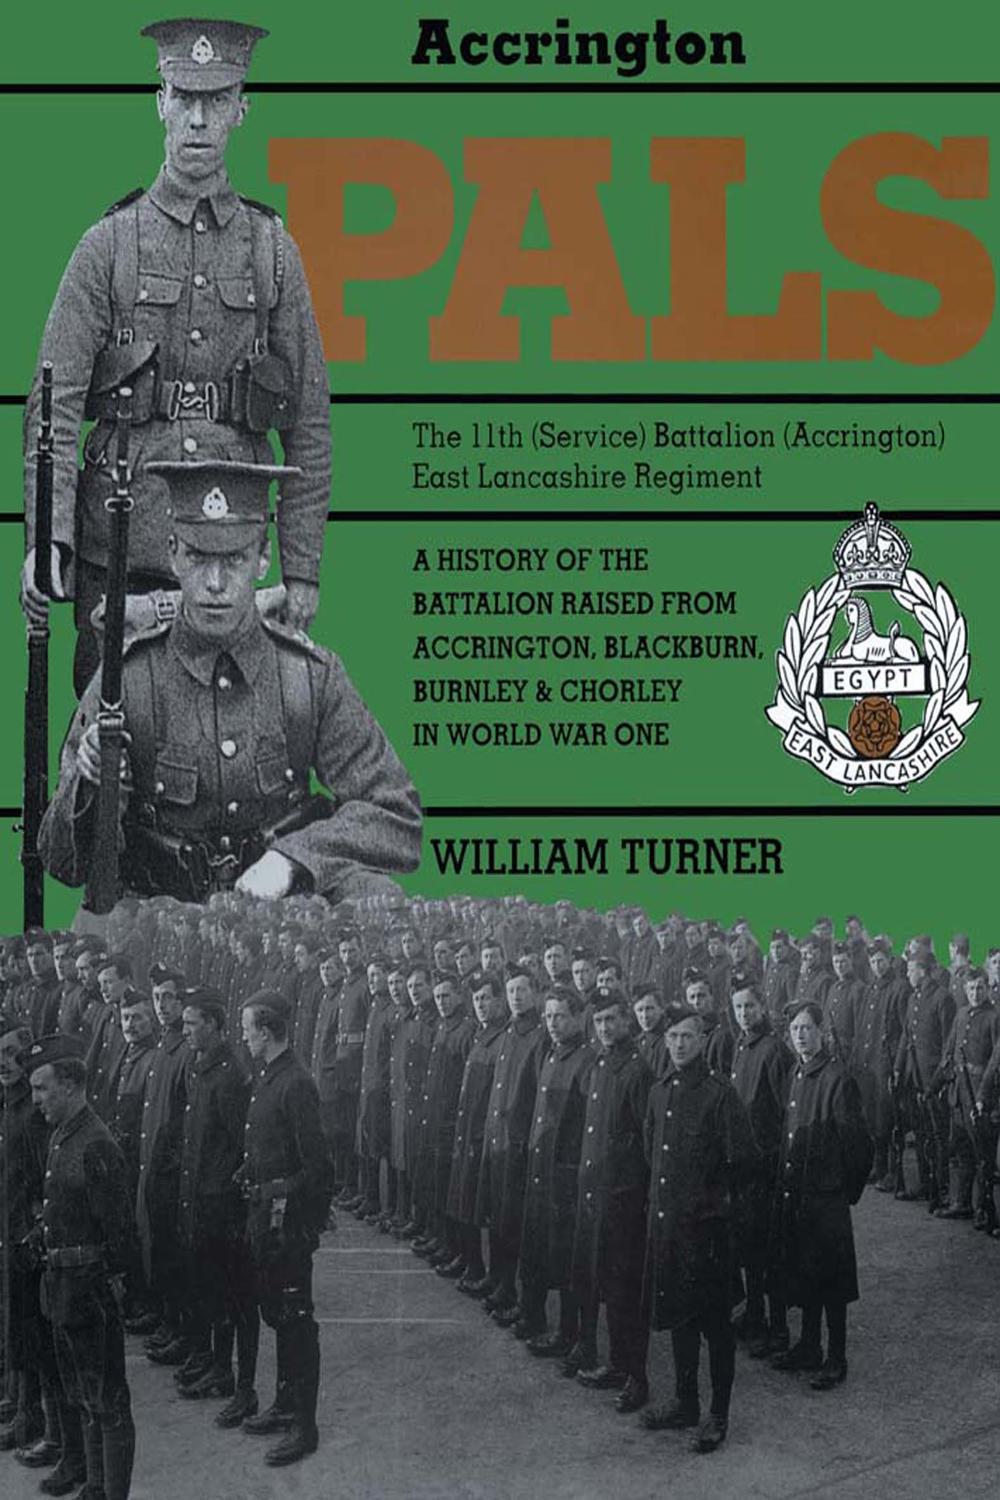 Accrington Pals: The 11th (Service) Battalion (Accrington) East Lancashire Regiment - William Bennett Turner